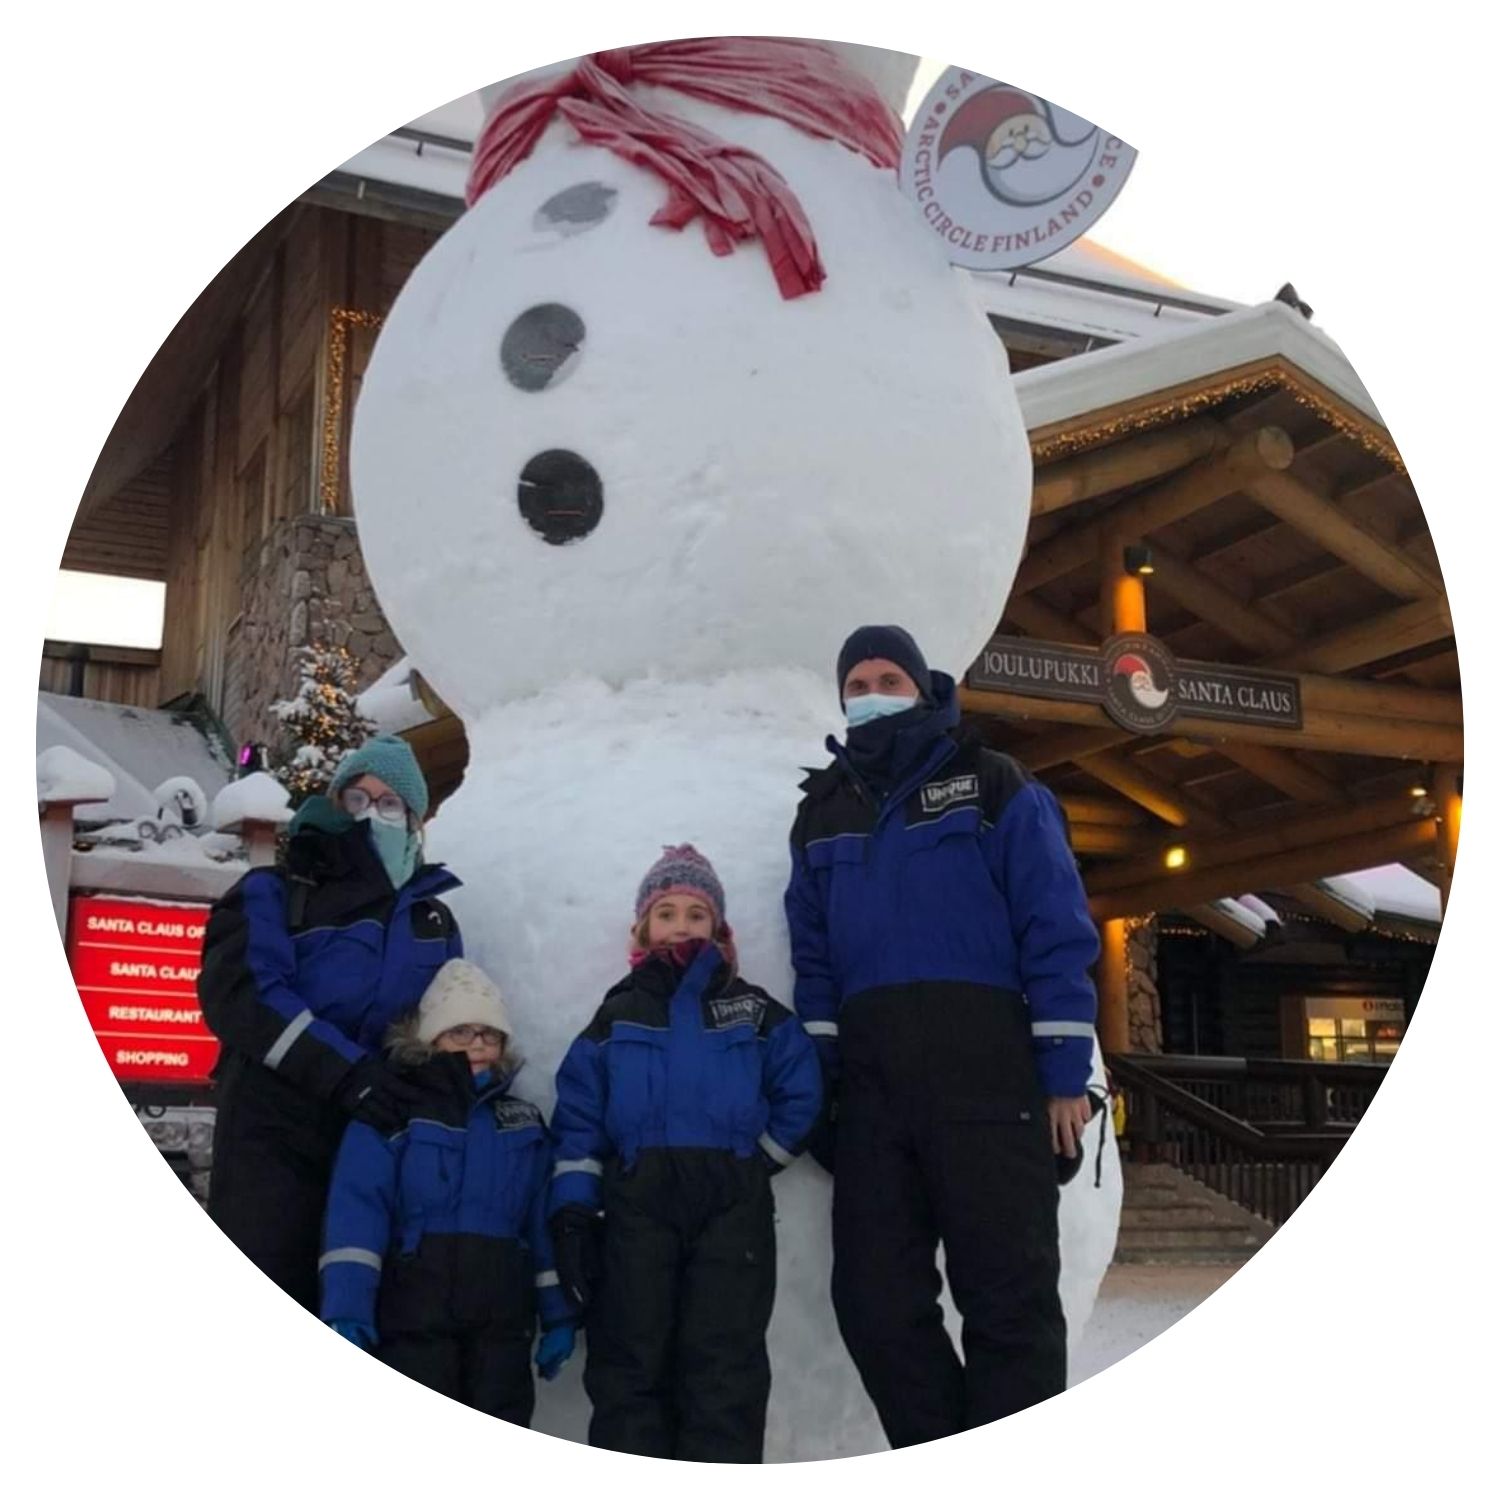 Une famille composée de deux garçons et leurs parents posant pour une photo à côté d'un grand bonhomme de neige en Finlande.